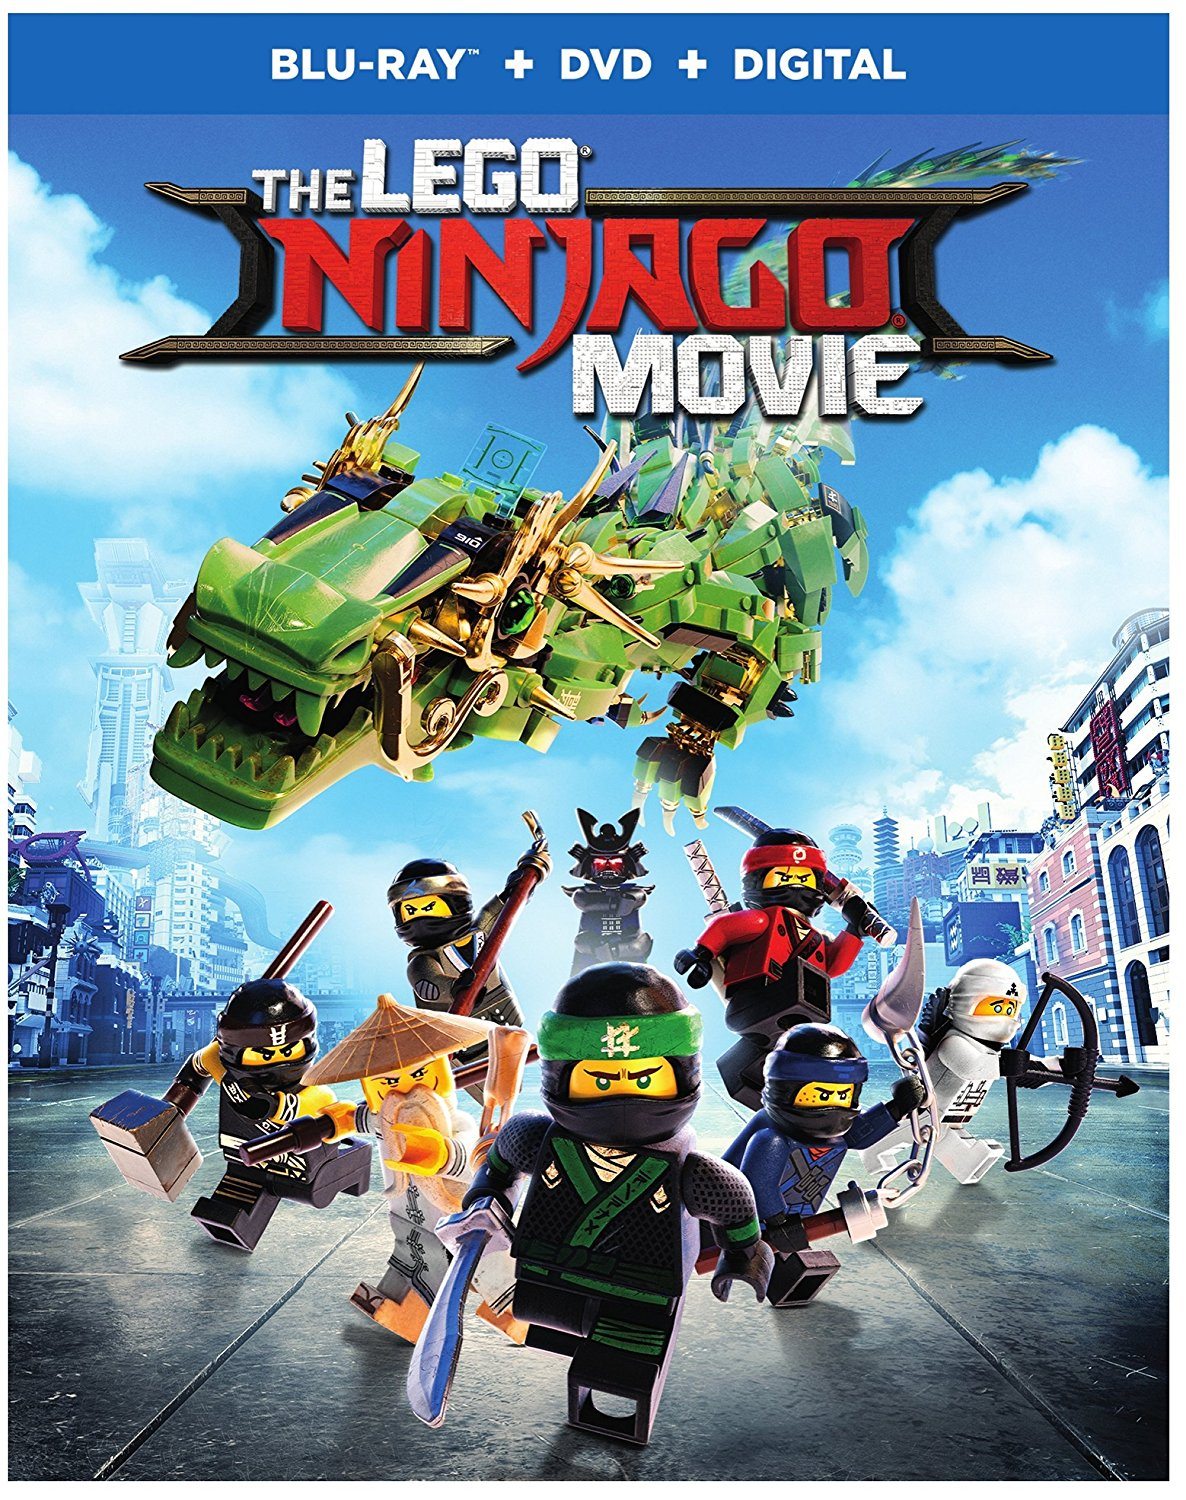 ดูหนังออนไลน์ฟรี The LEGO Ninjago Movie (2017) เดอะ เลโก้ นินจาโก มูฟวี่ หนังเต็มเรื่อง หนังมาสเตอร์ ดูหนังHD ดูหนังออนไลน์ ดูหนังใหม่